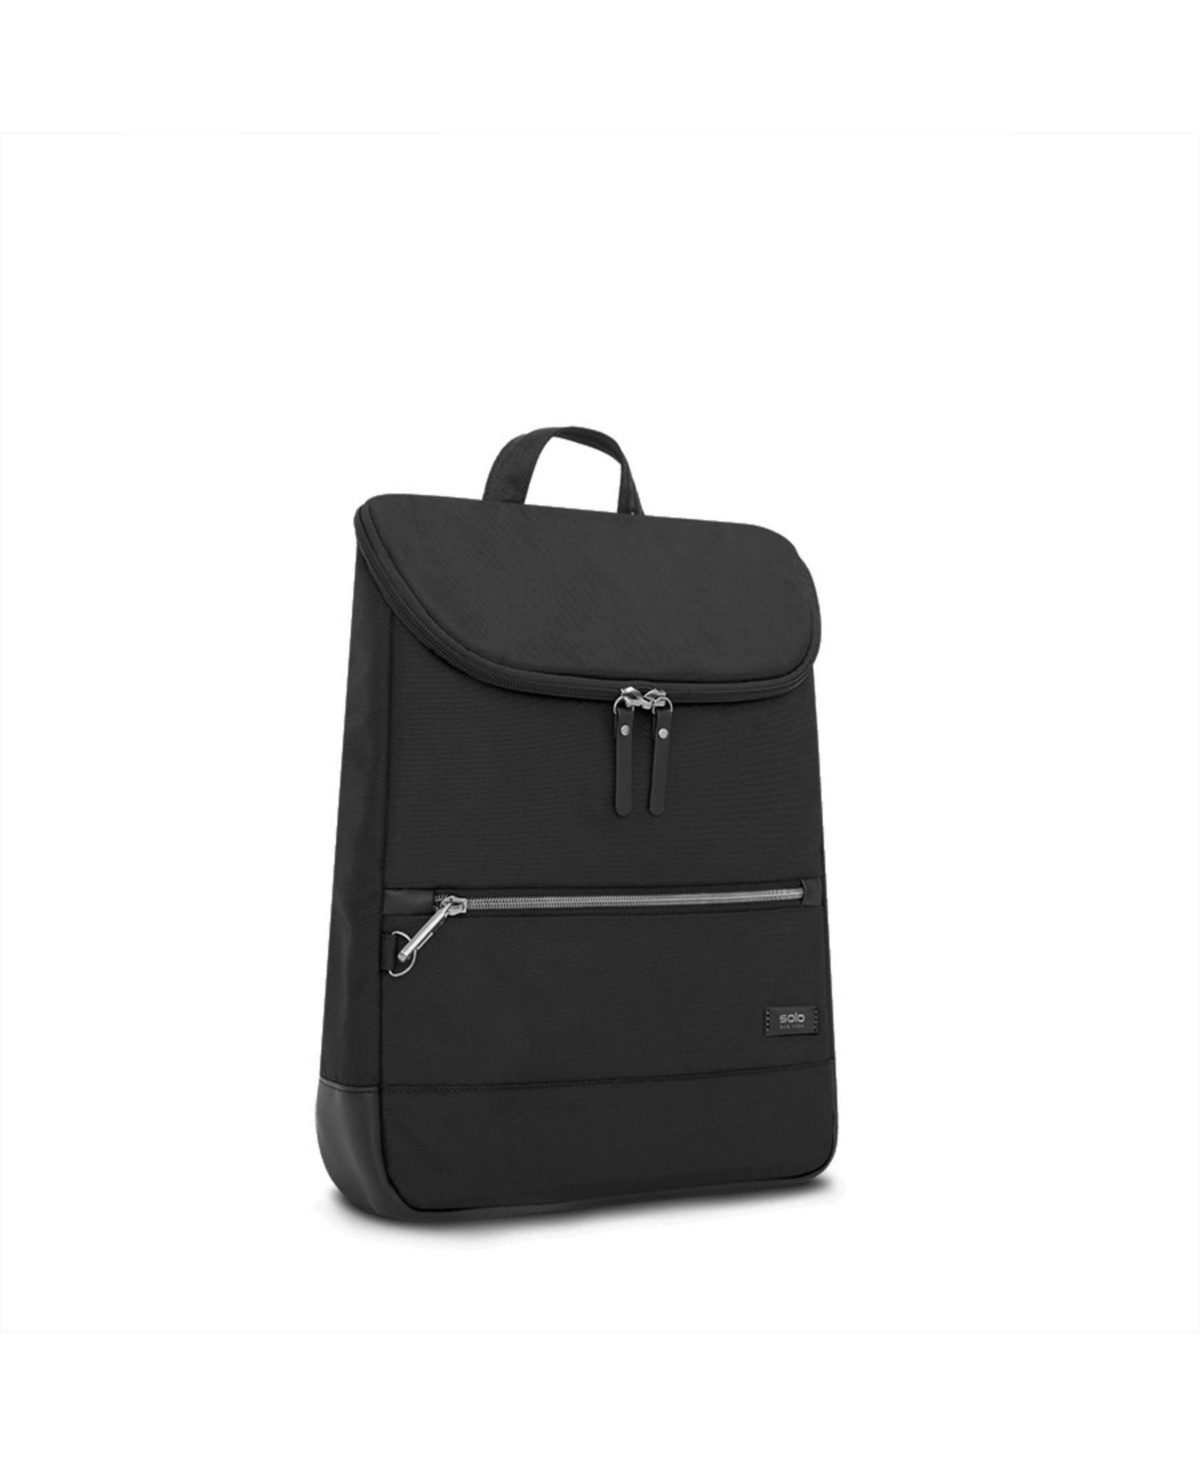 New York Stealth Hybrid Backpack - Black